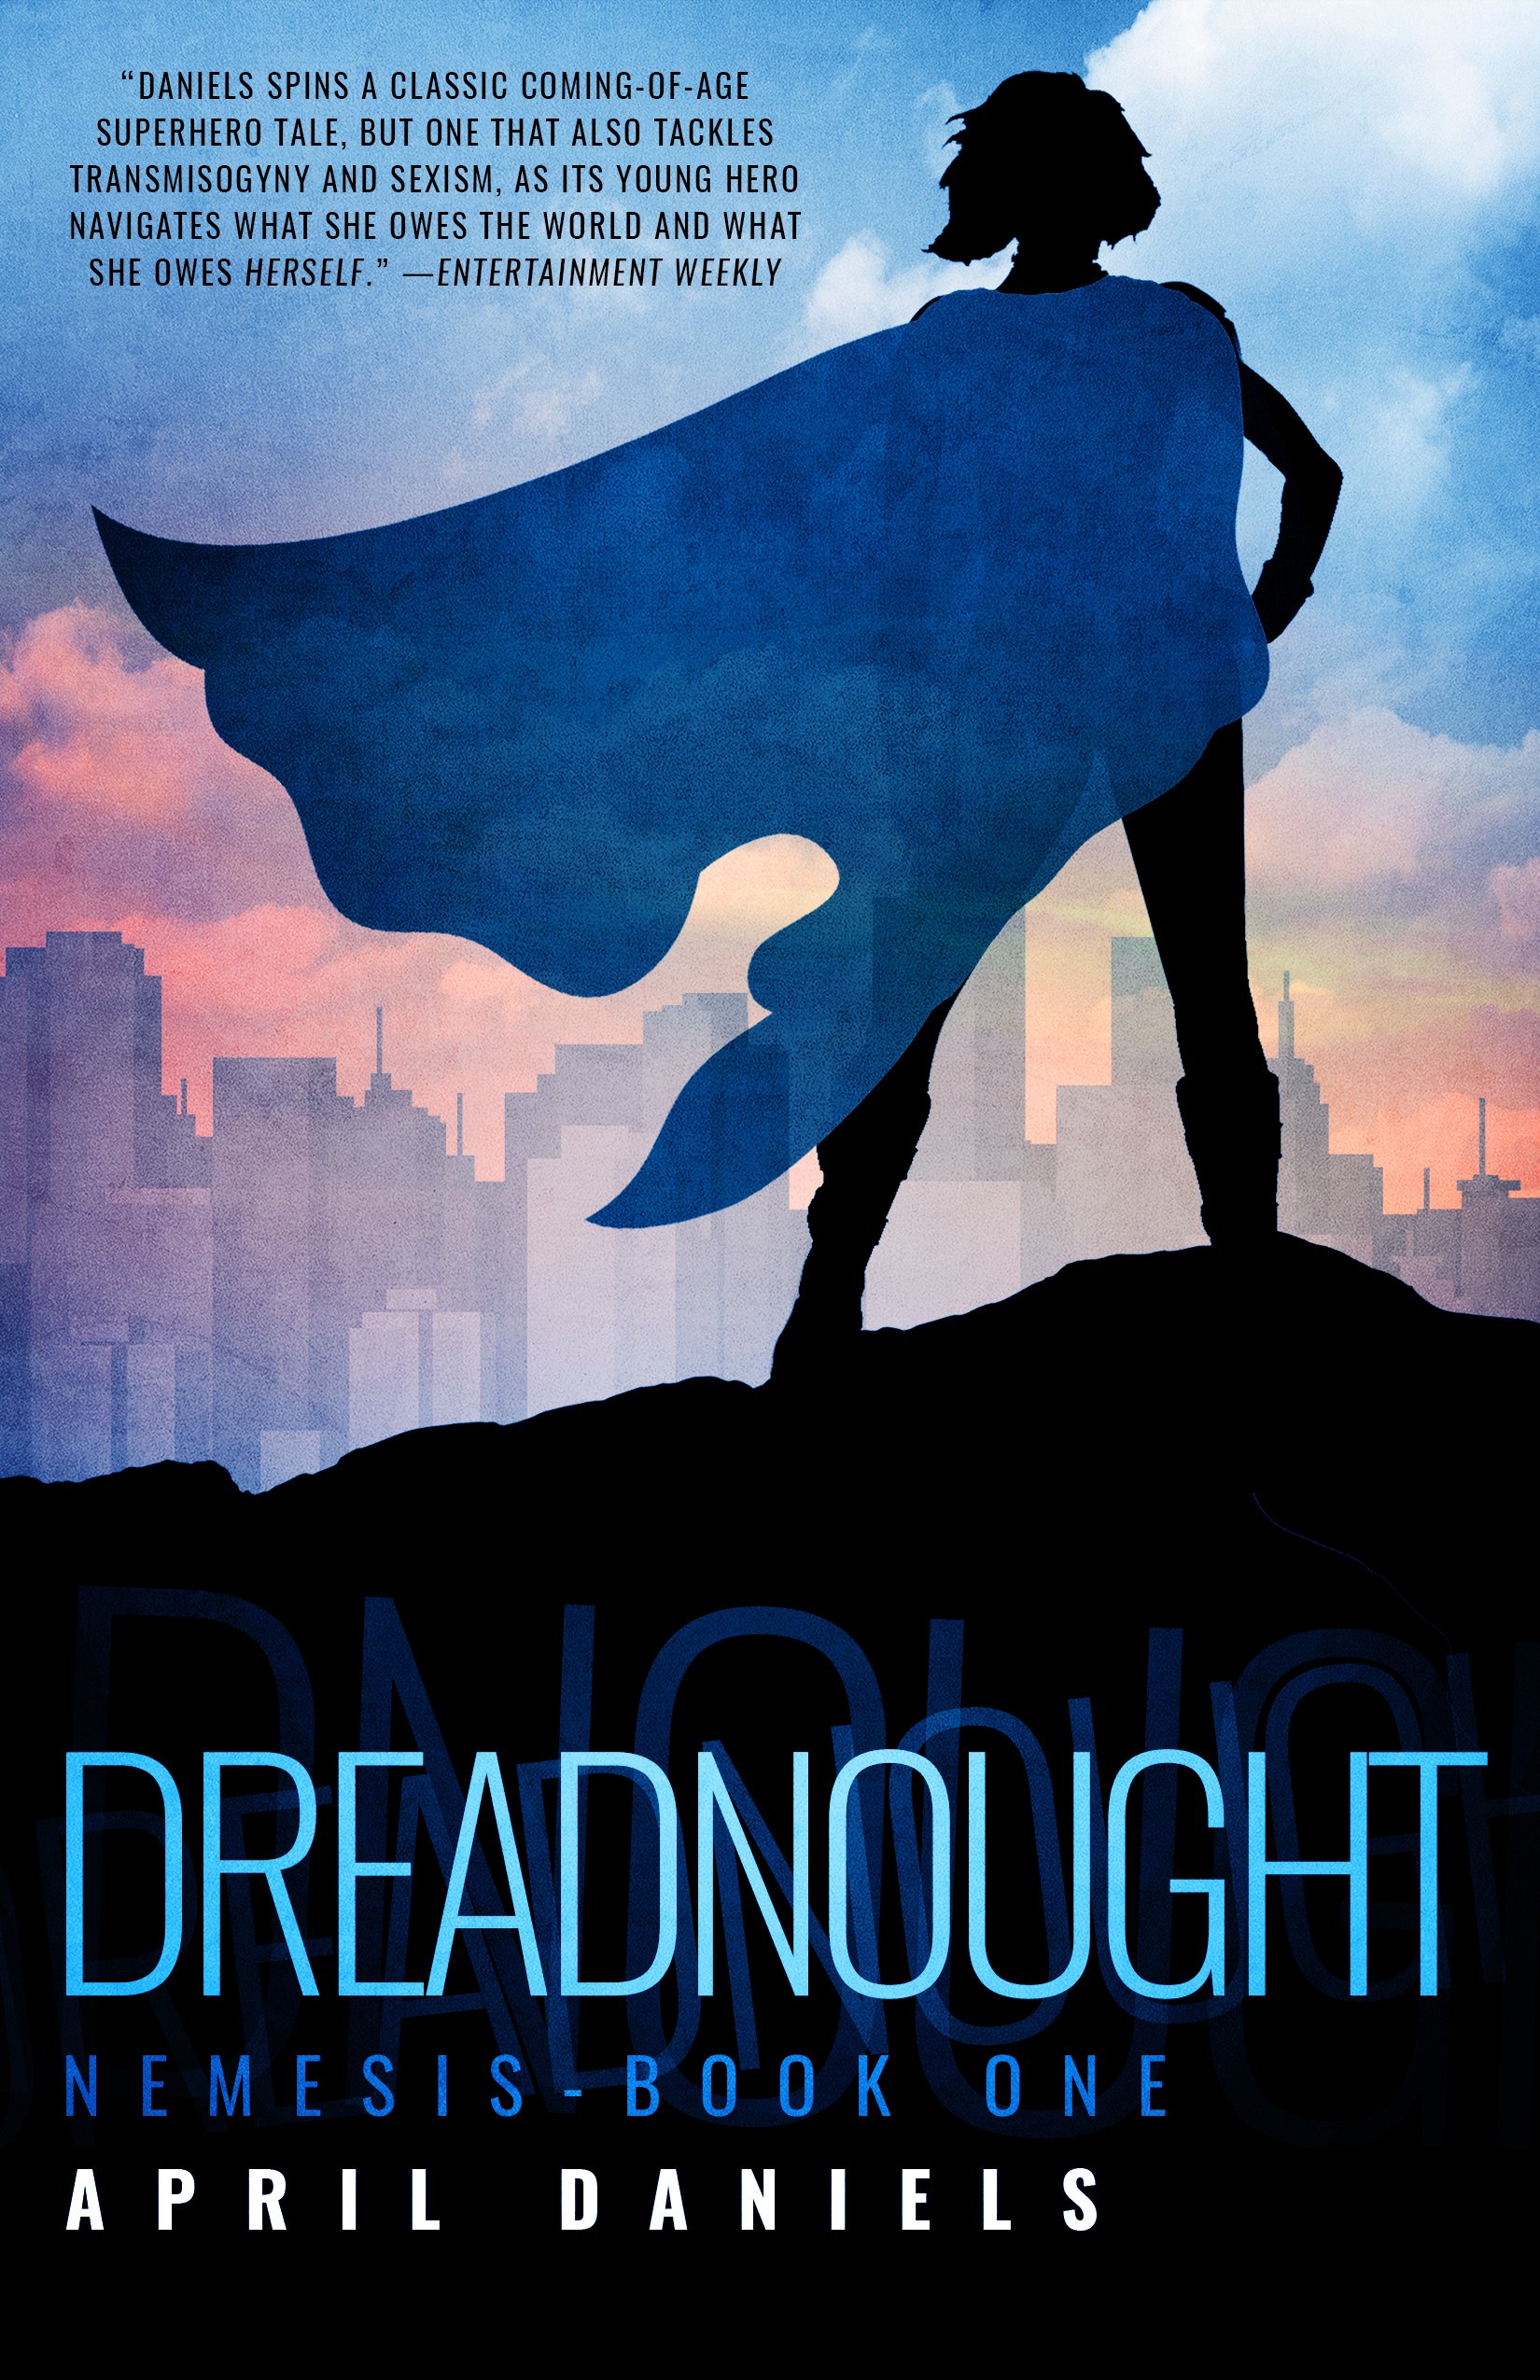 couverture de Dreadnought d'April Daniels